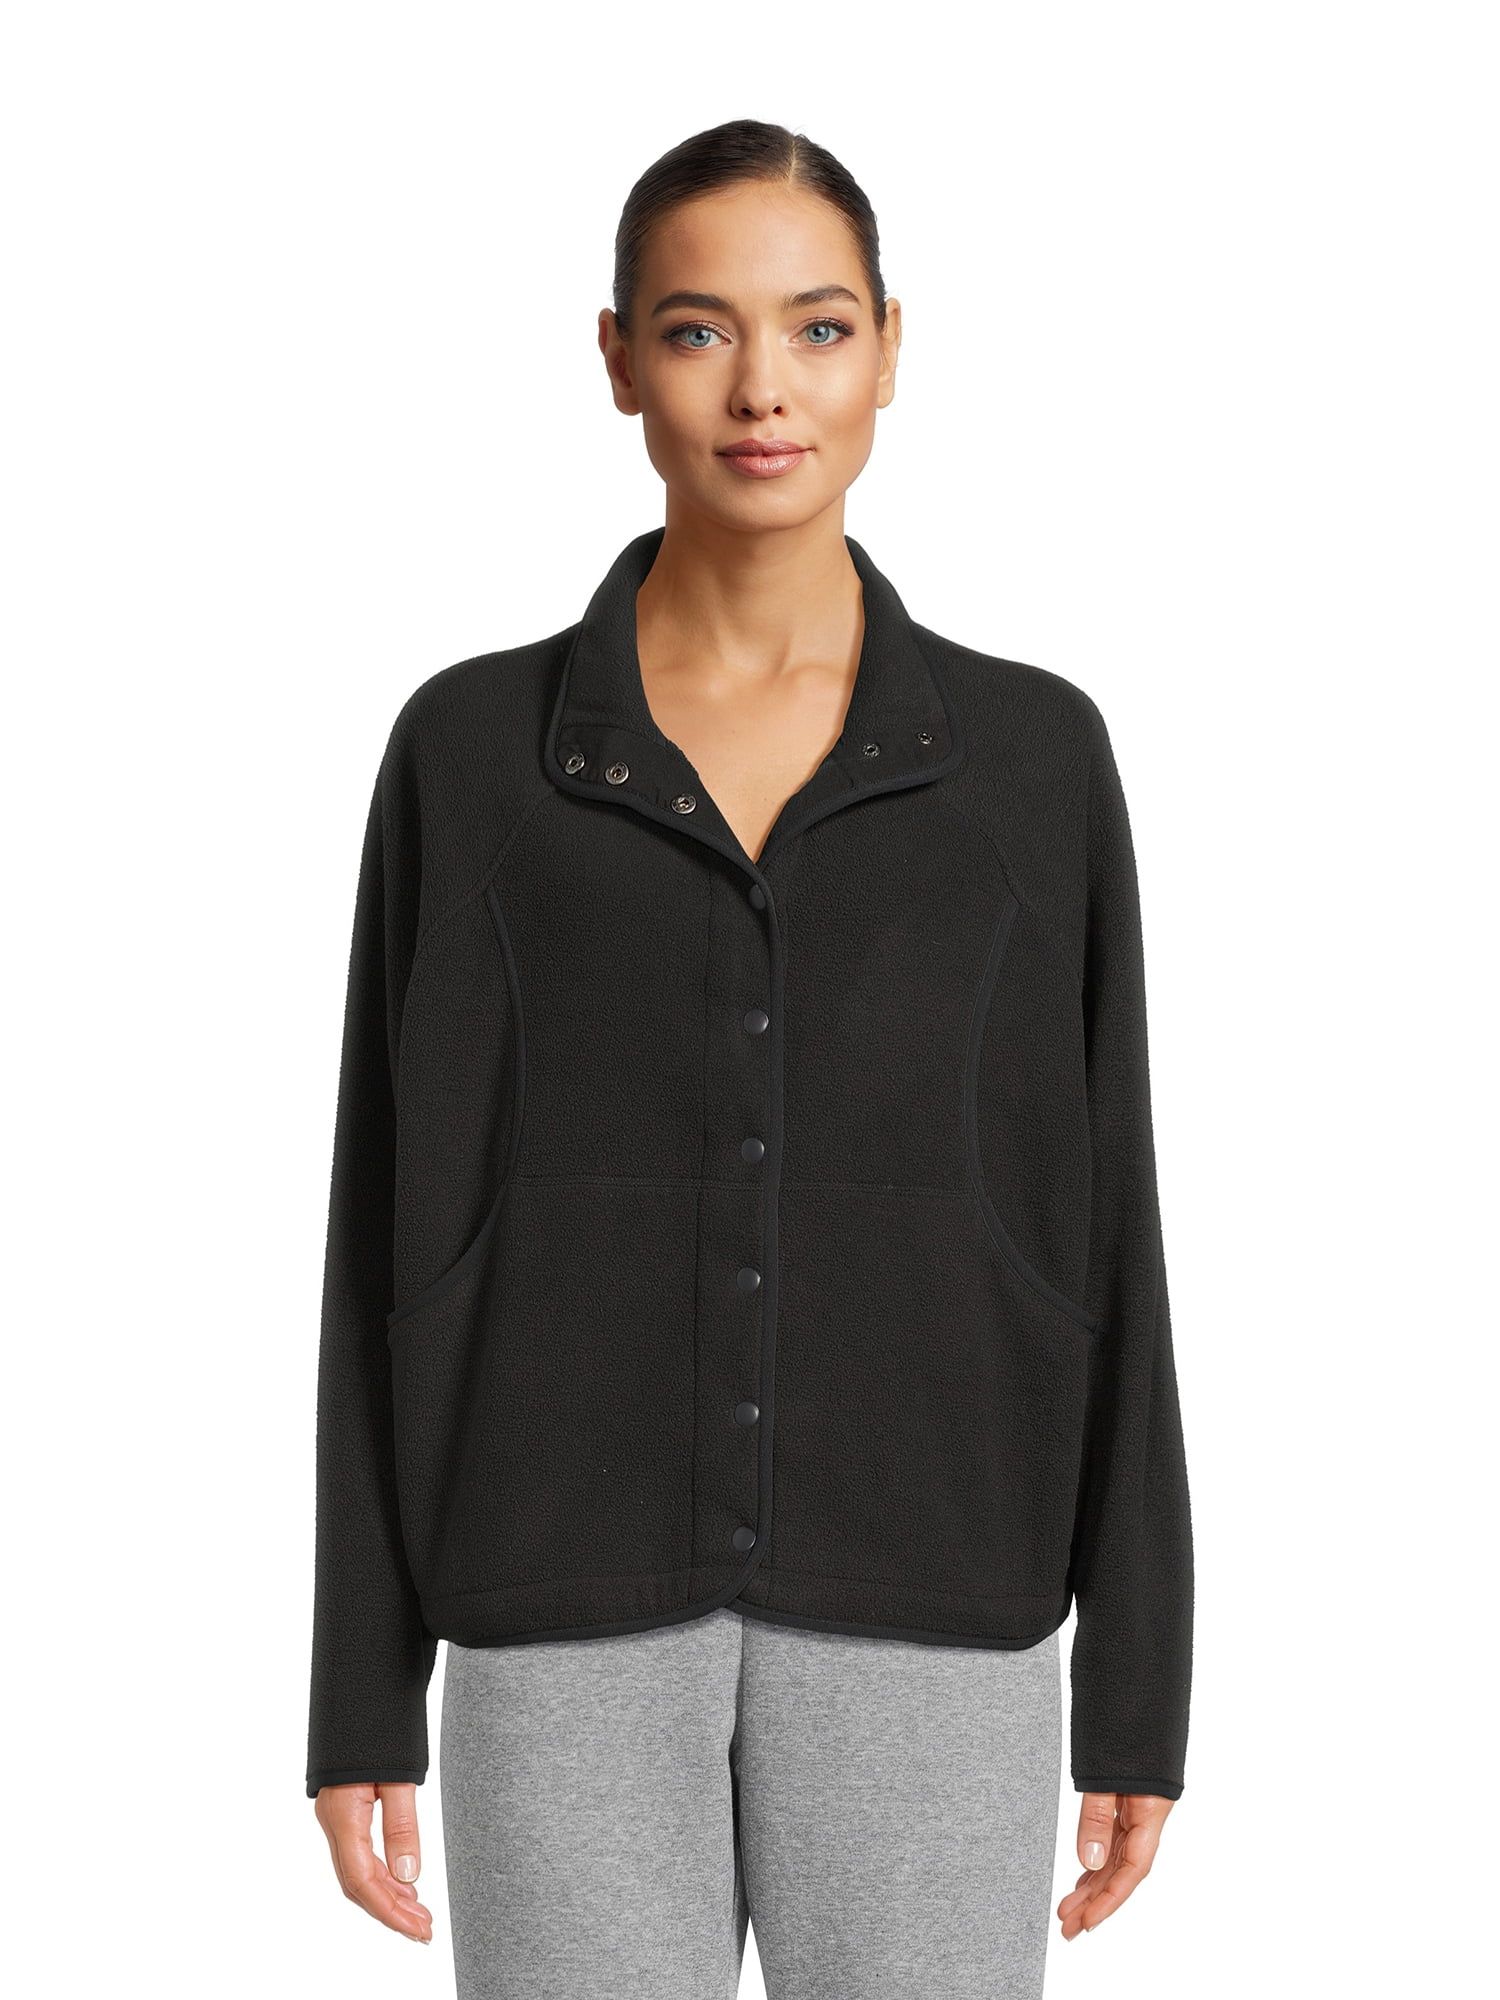 Avia Women's Snap Fleece Mock Neck Jacket, Sizes XS-XXXL | Walmart (US)